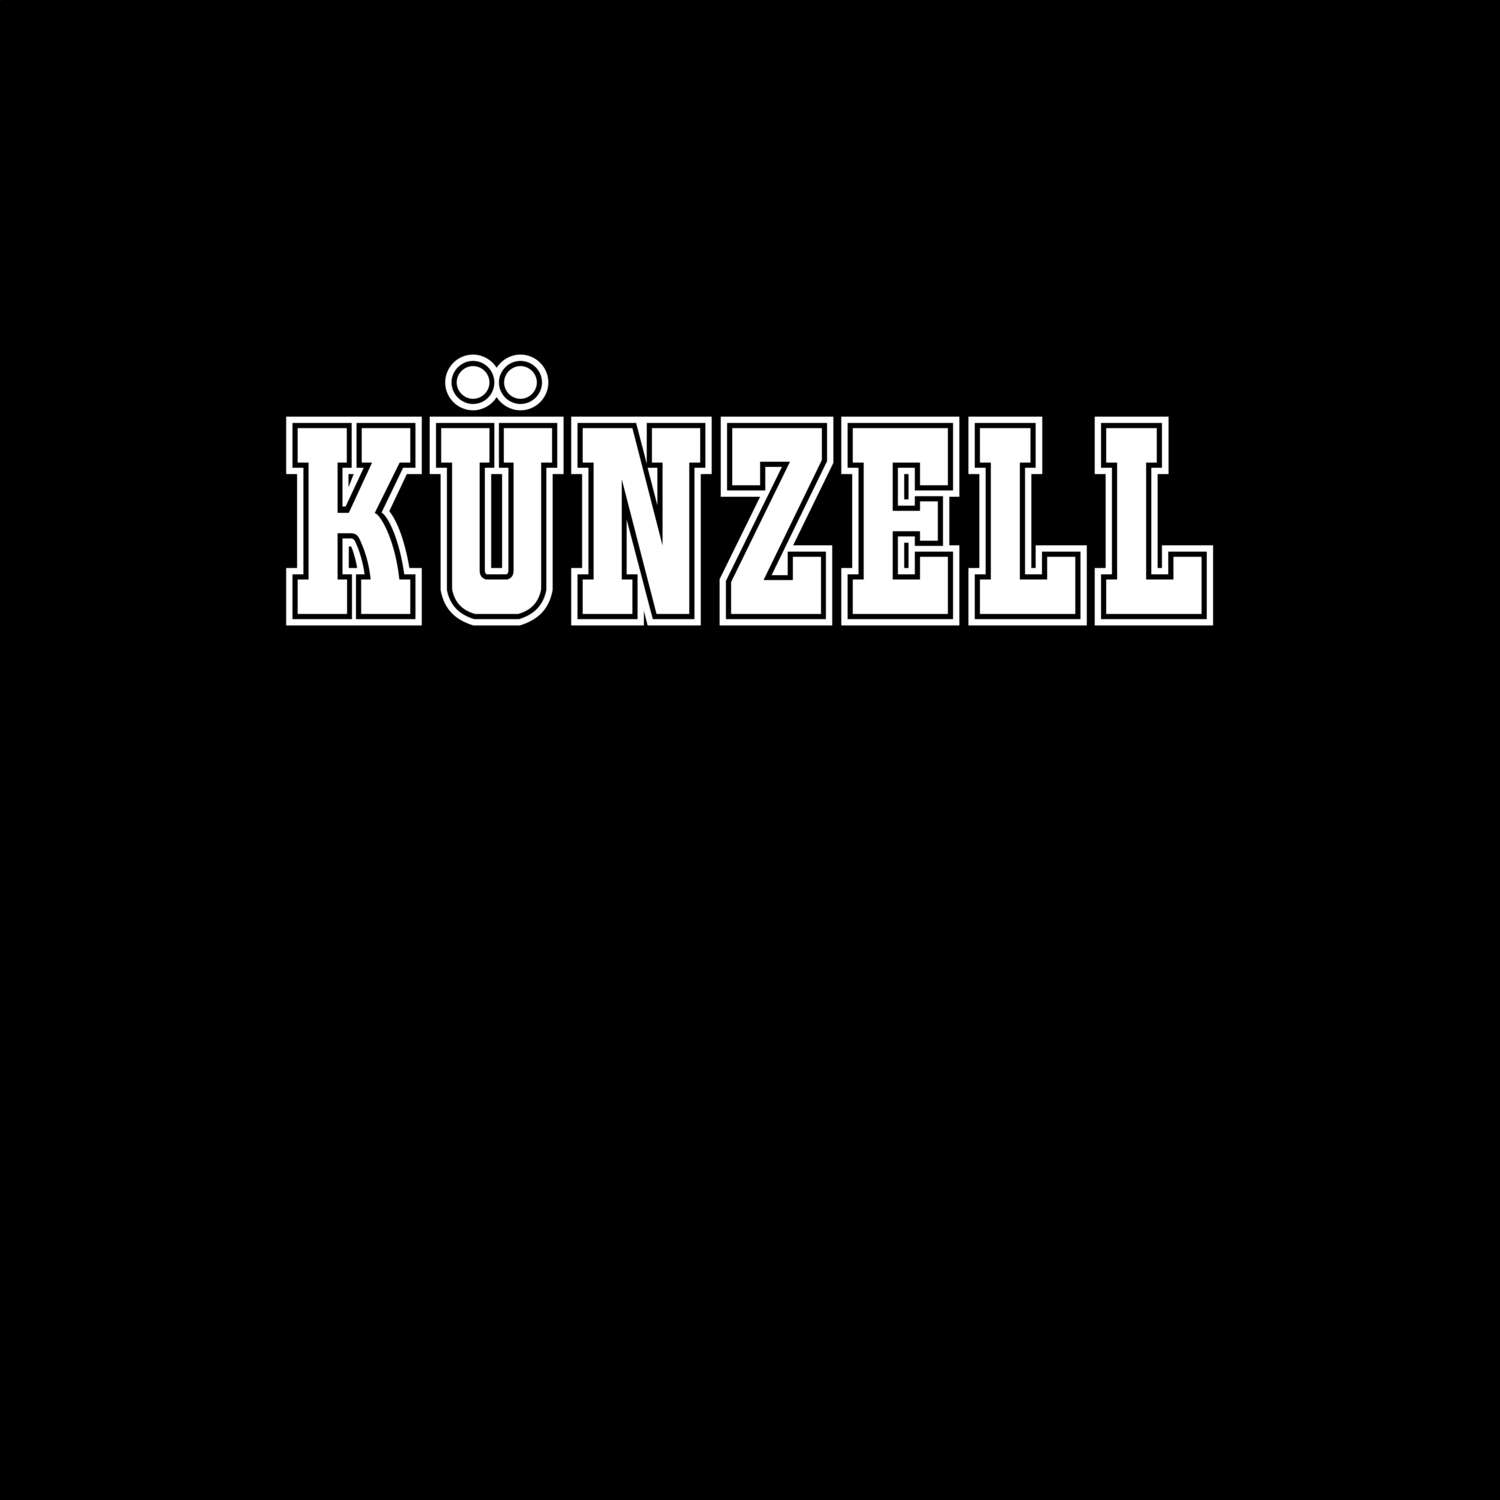 Künzell T-Shirt »Classic«